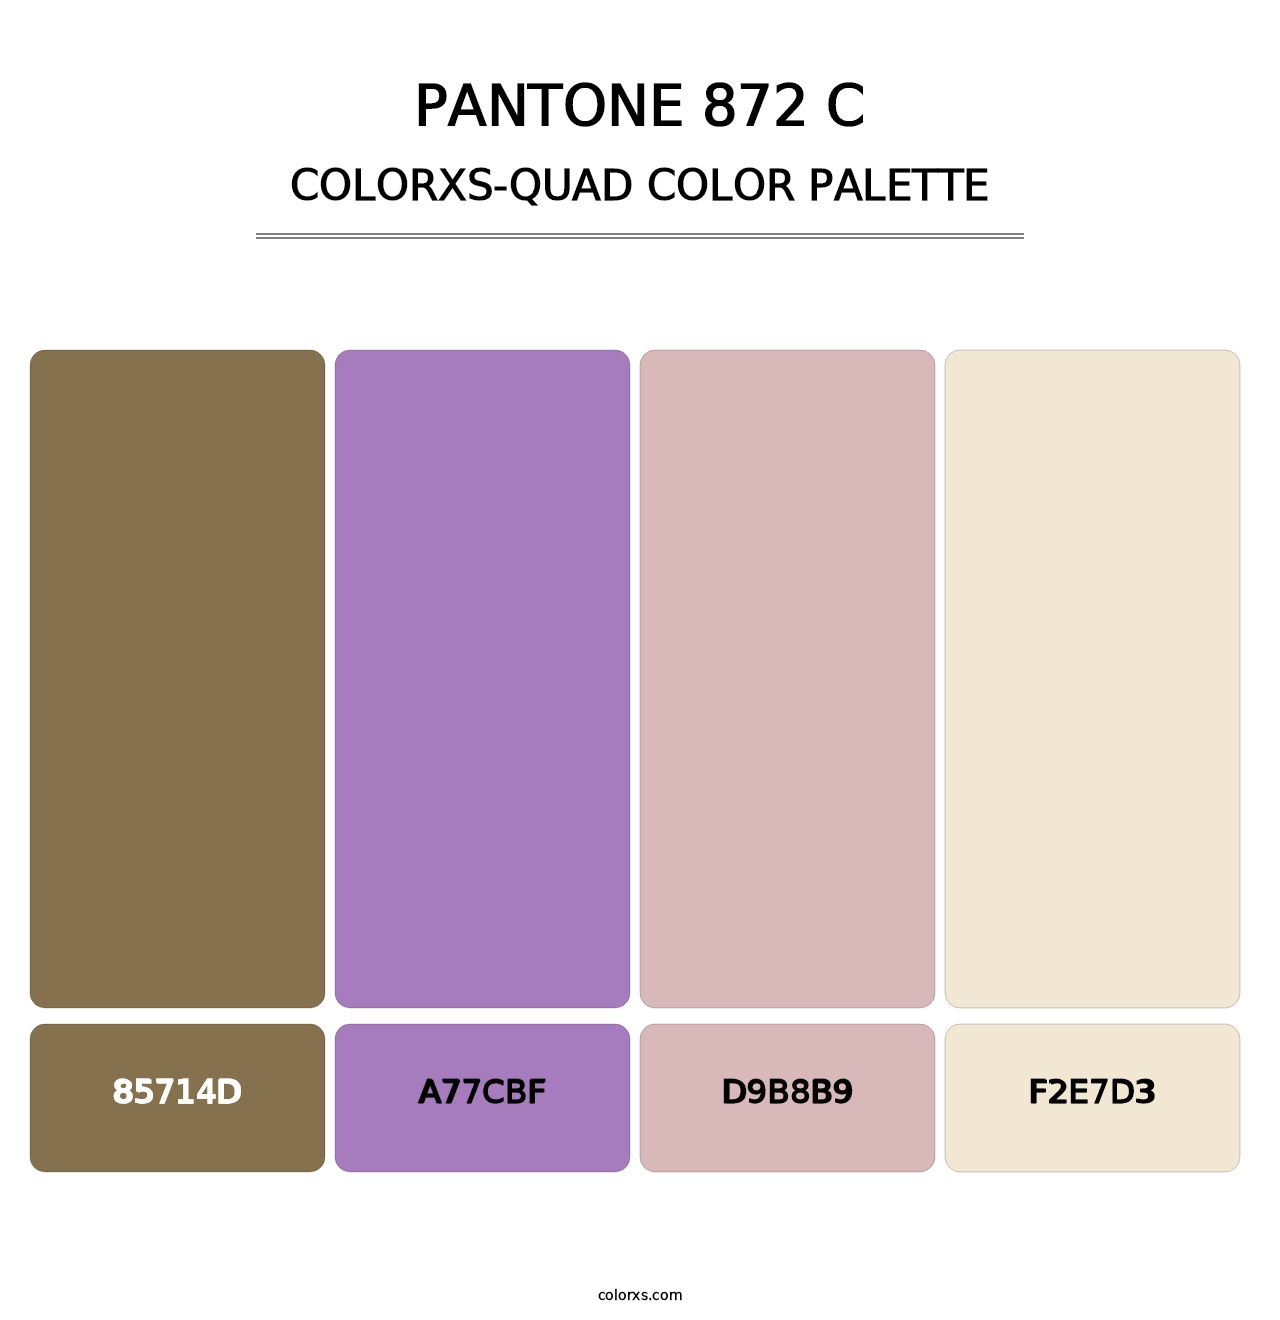 PANTONE 872 C - Colorxs Quad Palette